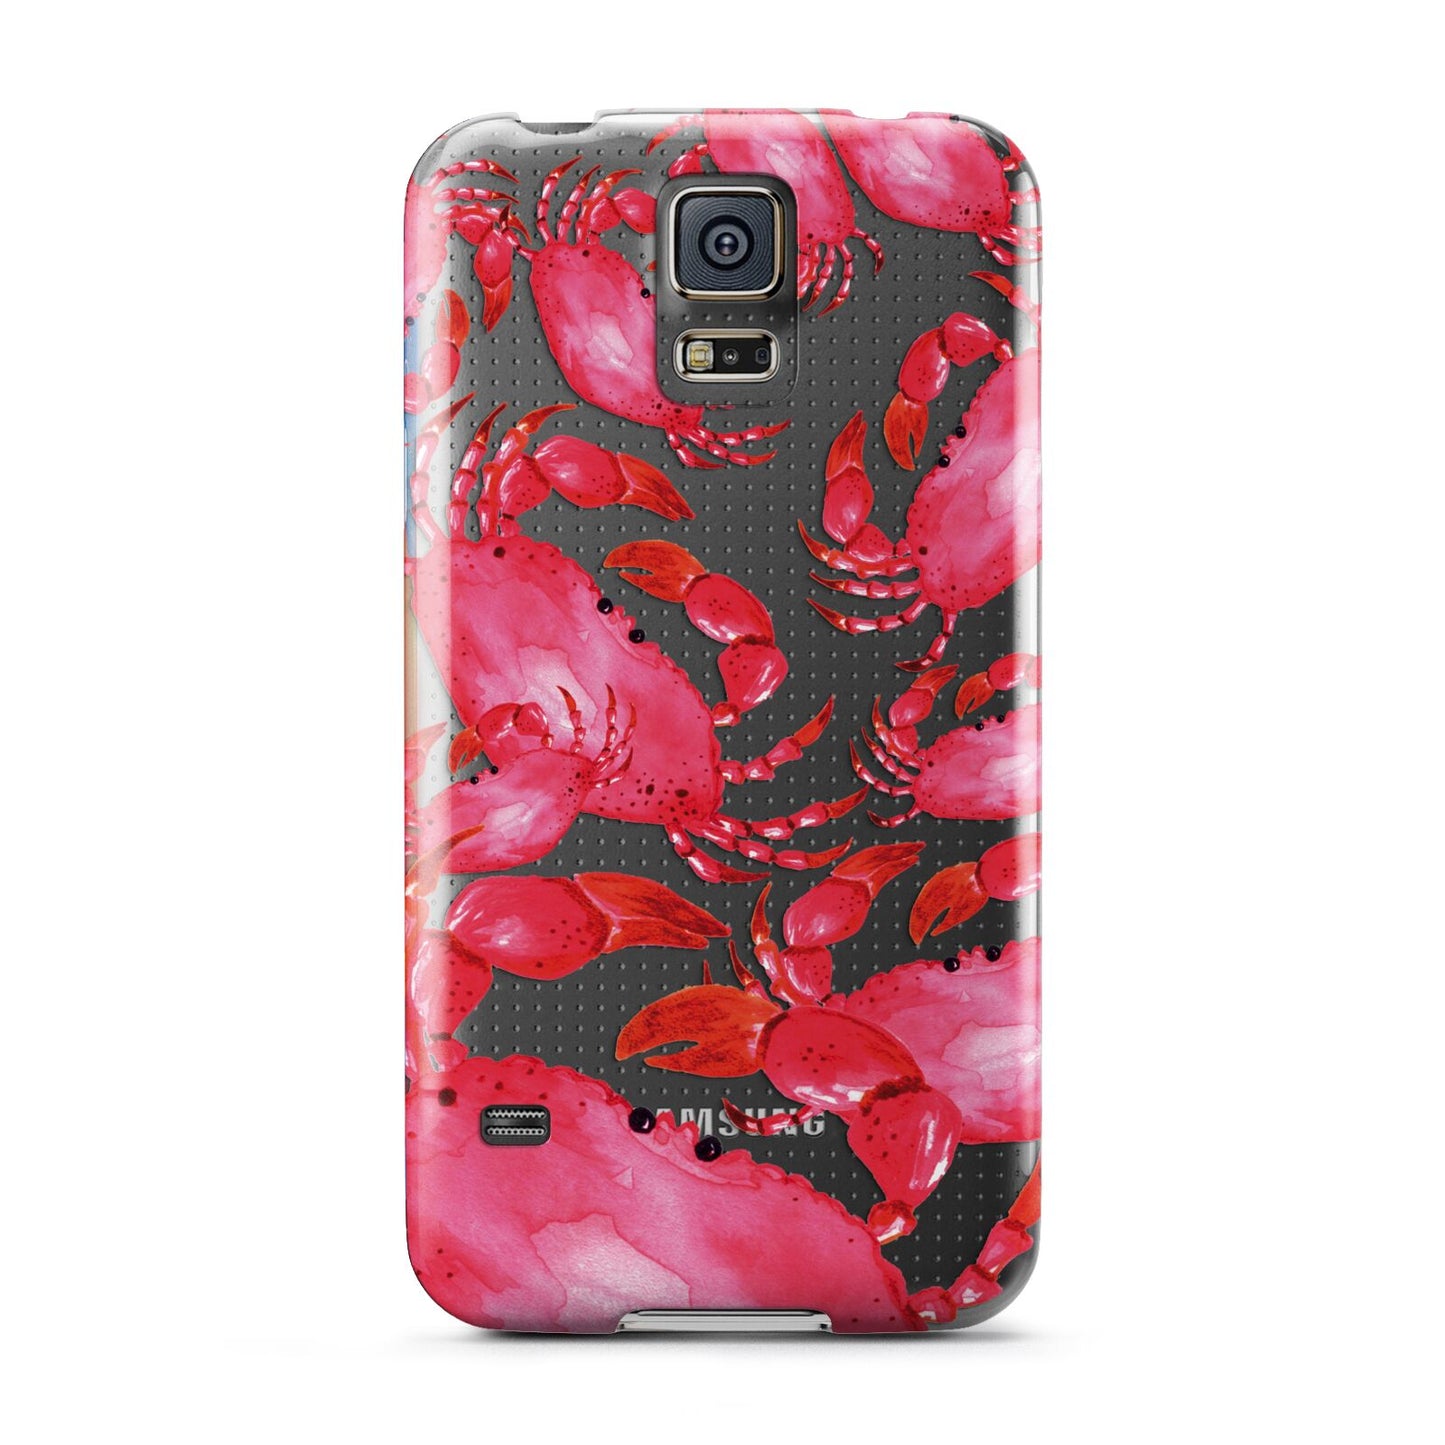 Crab Samsung Galaxy S5 Case